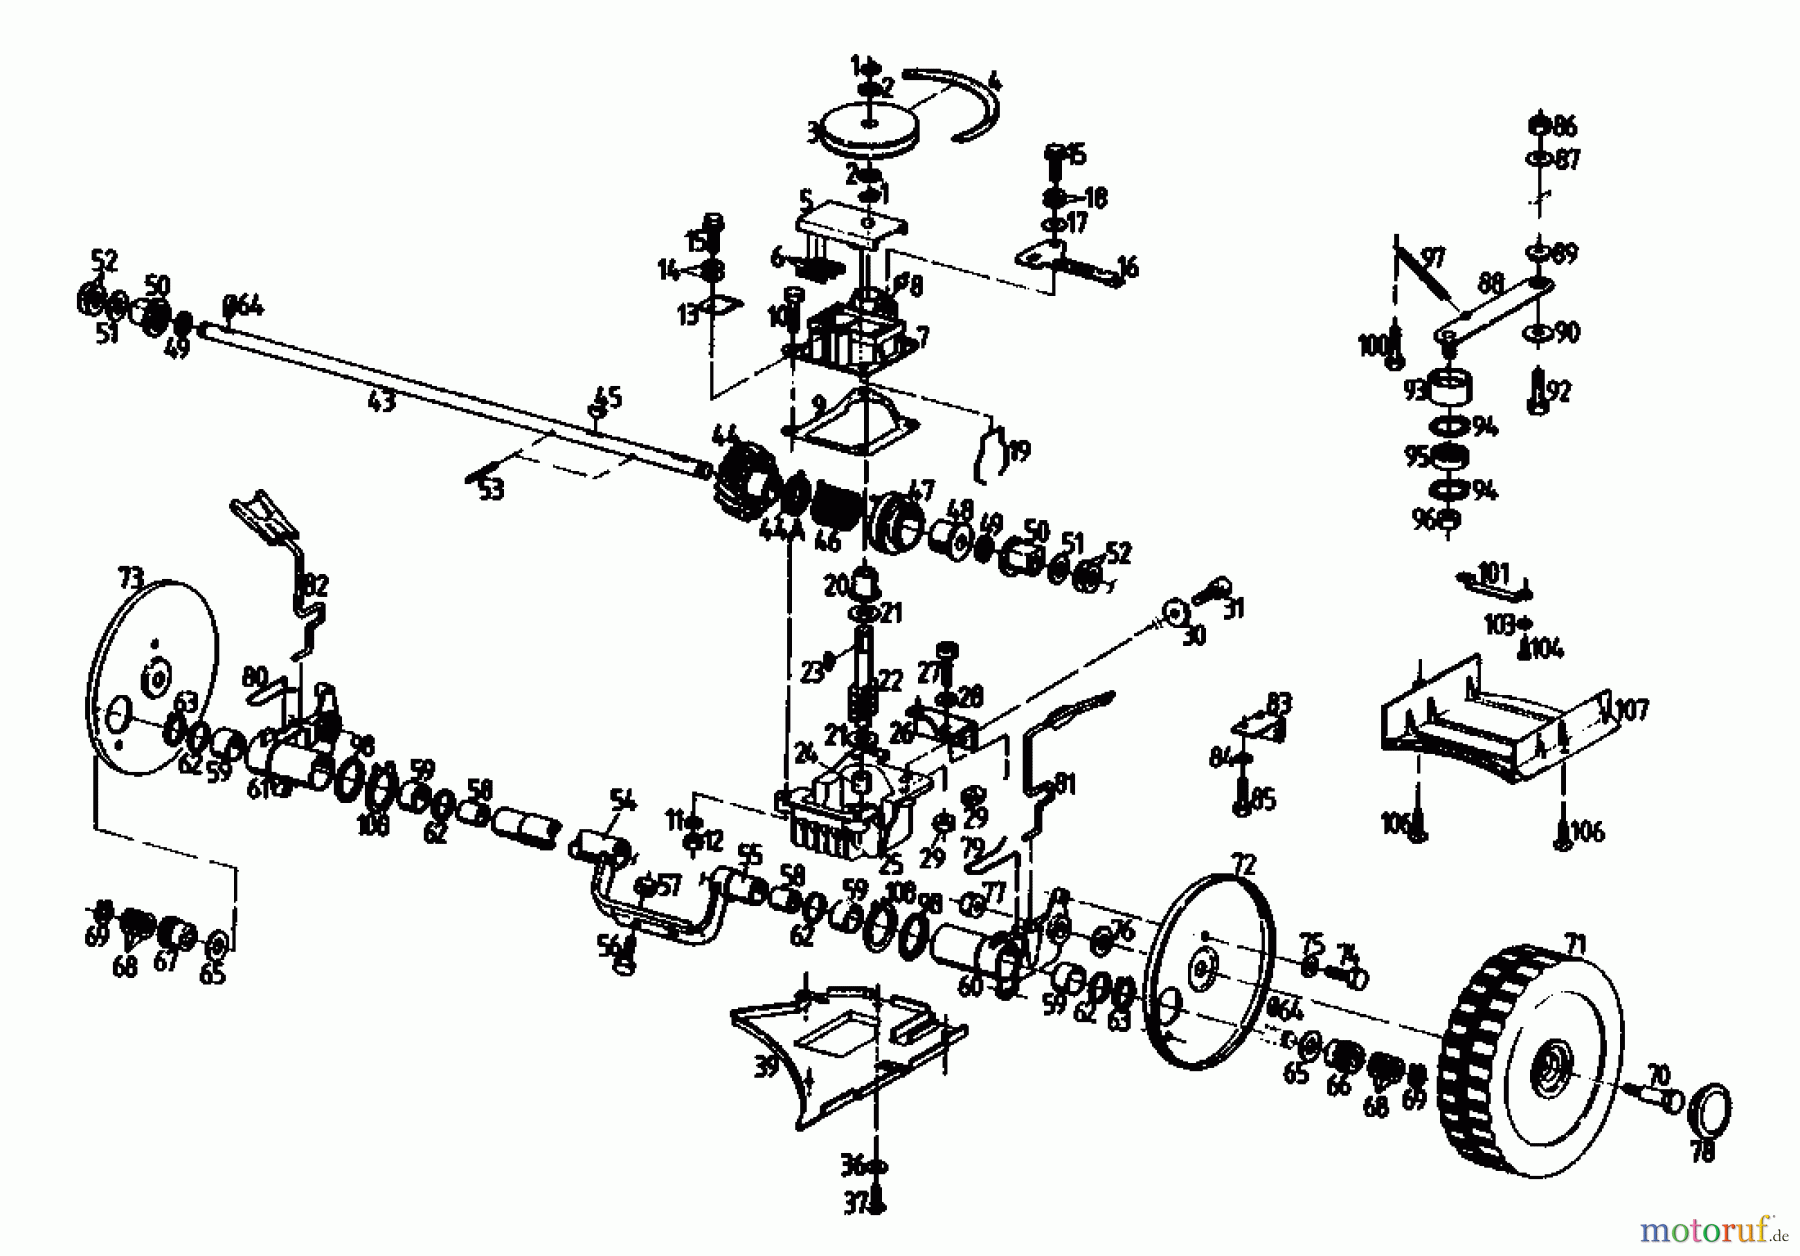  Gutbrod Petrol mower self propelled HB 47 REL 02847.09  (1990) Gearbox